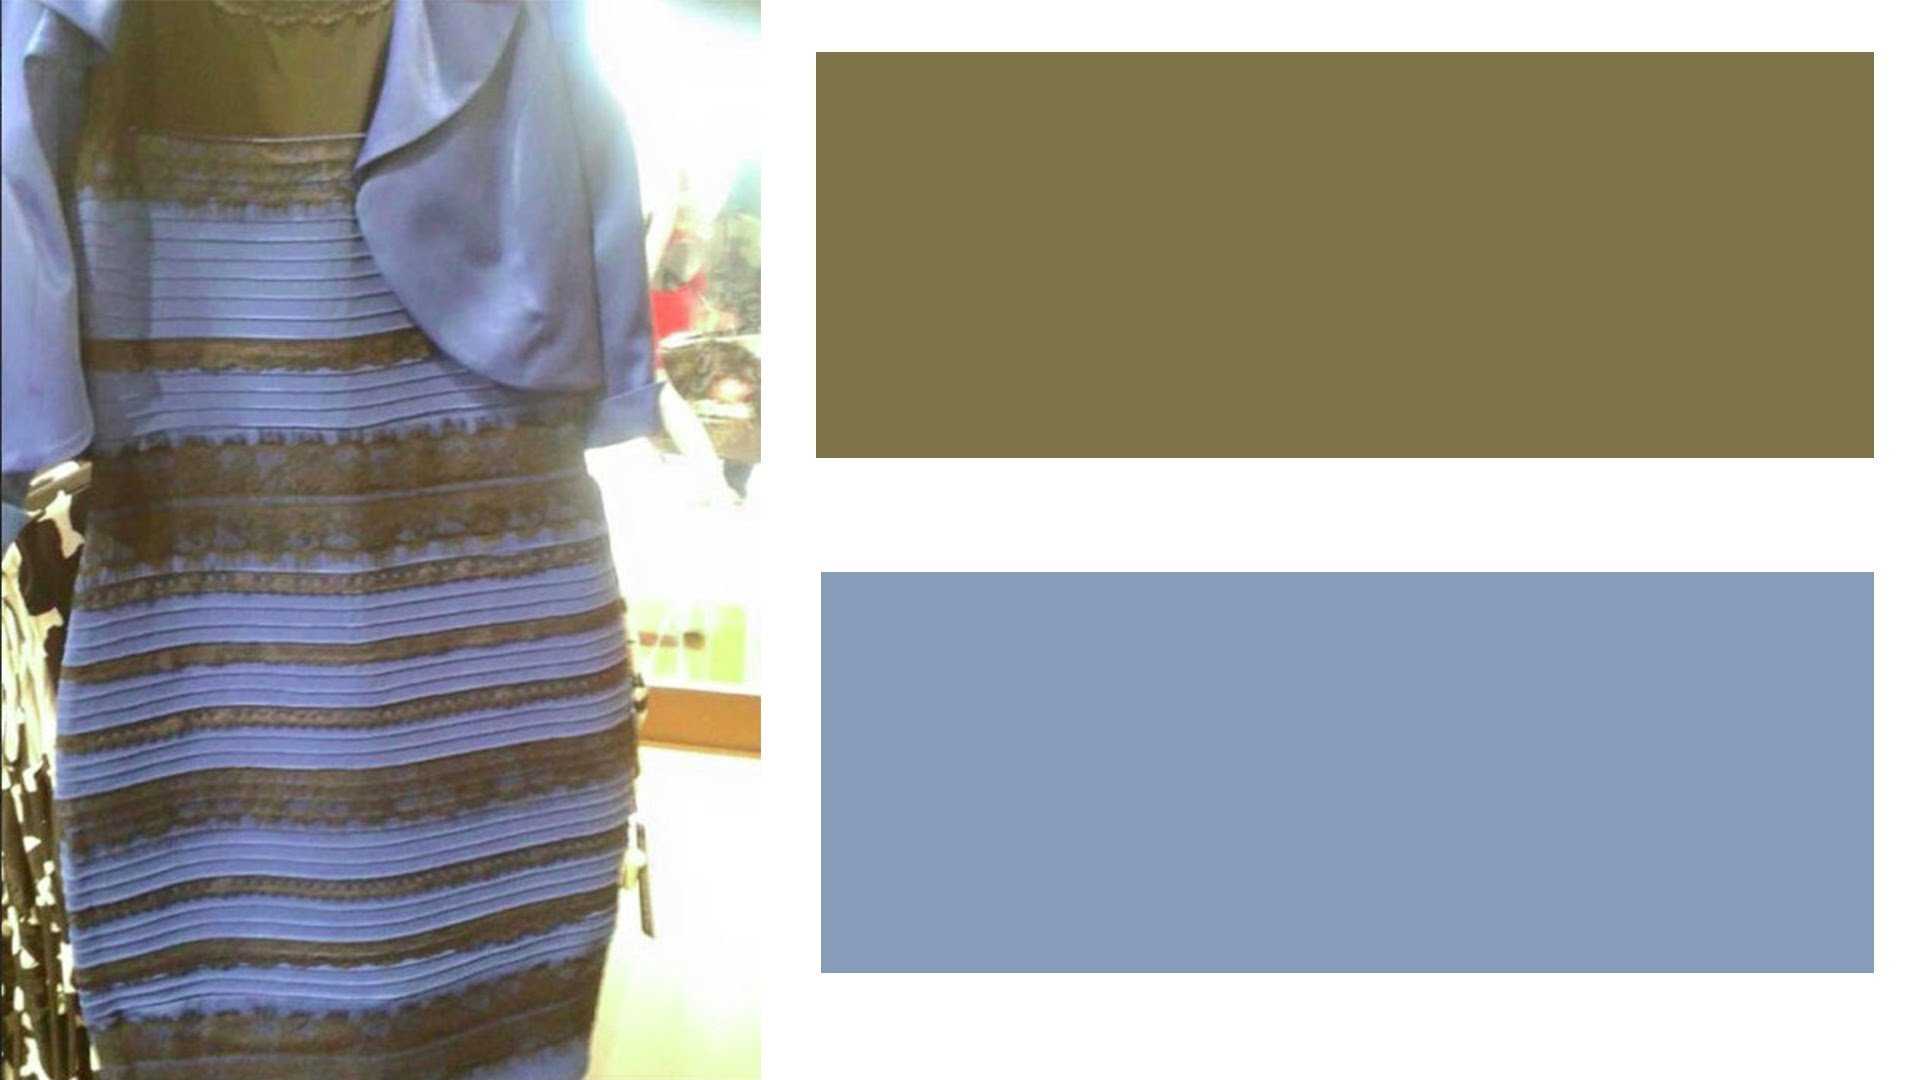 Платье синее или белое на самом деле. загадка синего-белого платья